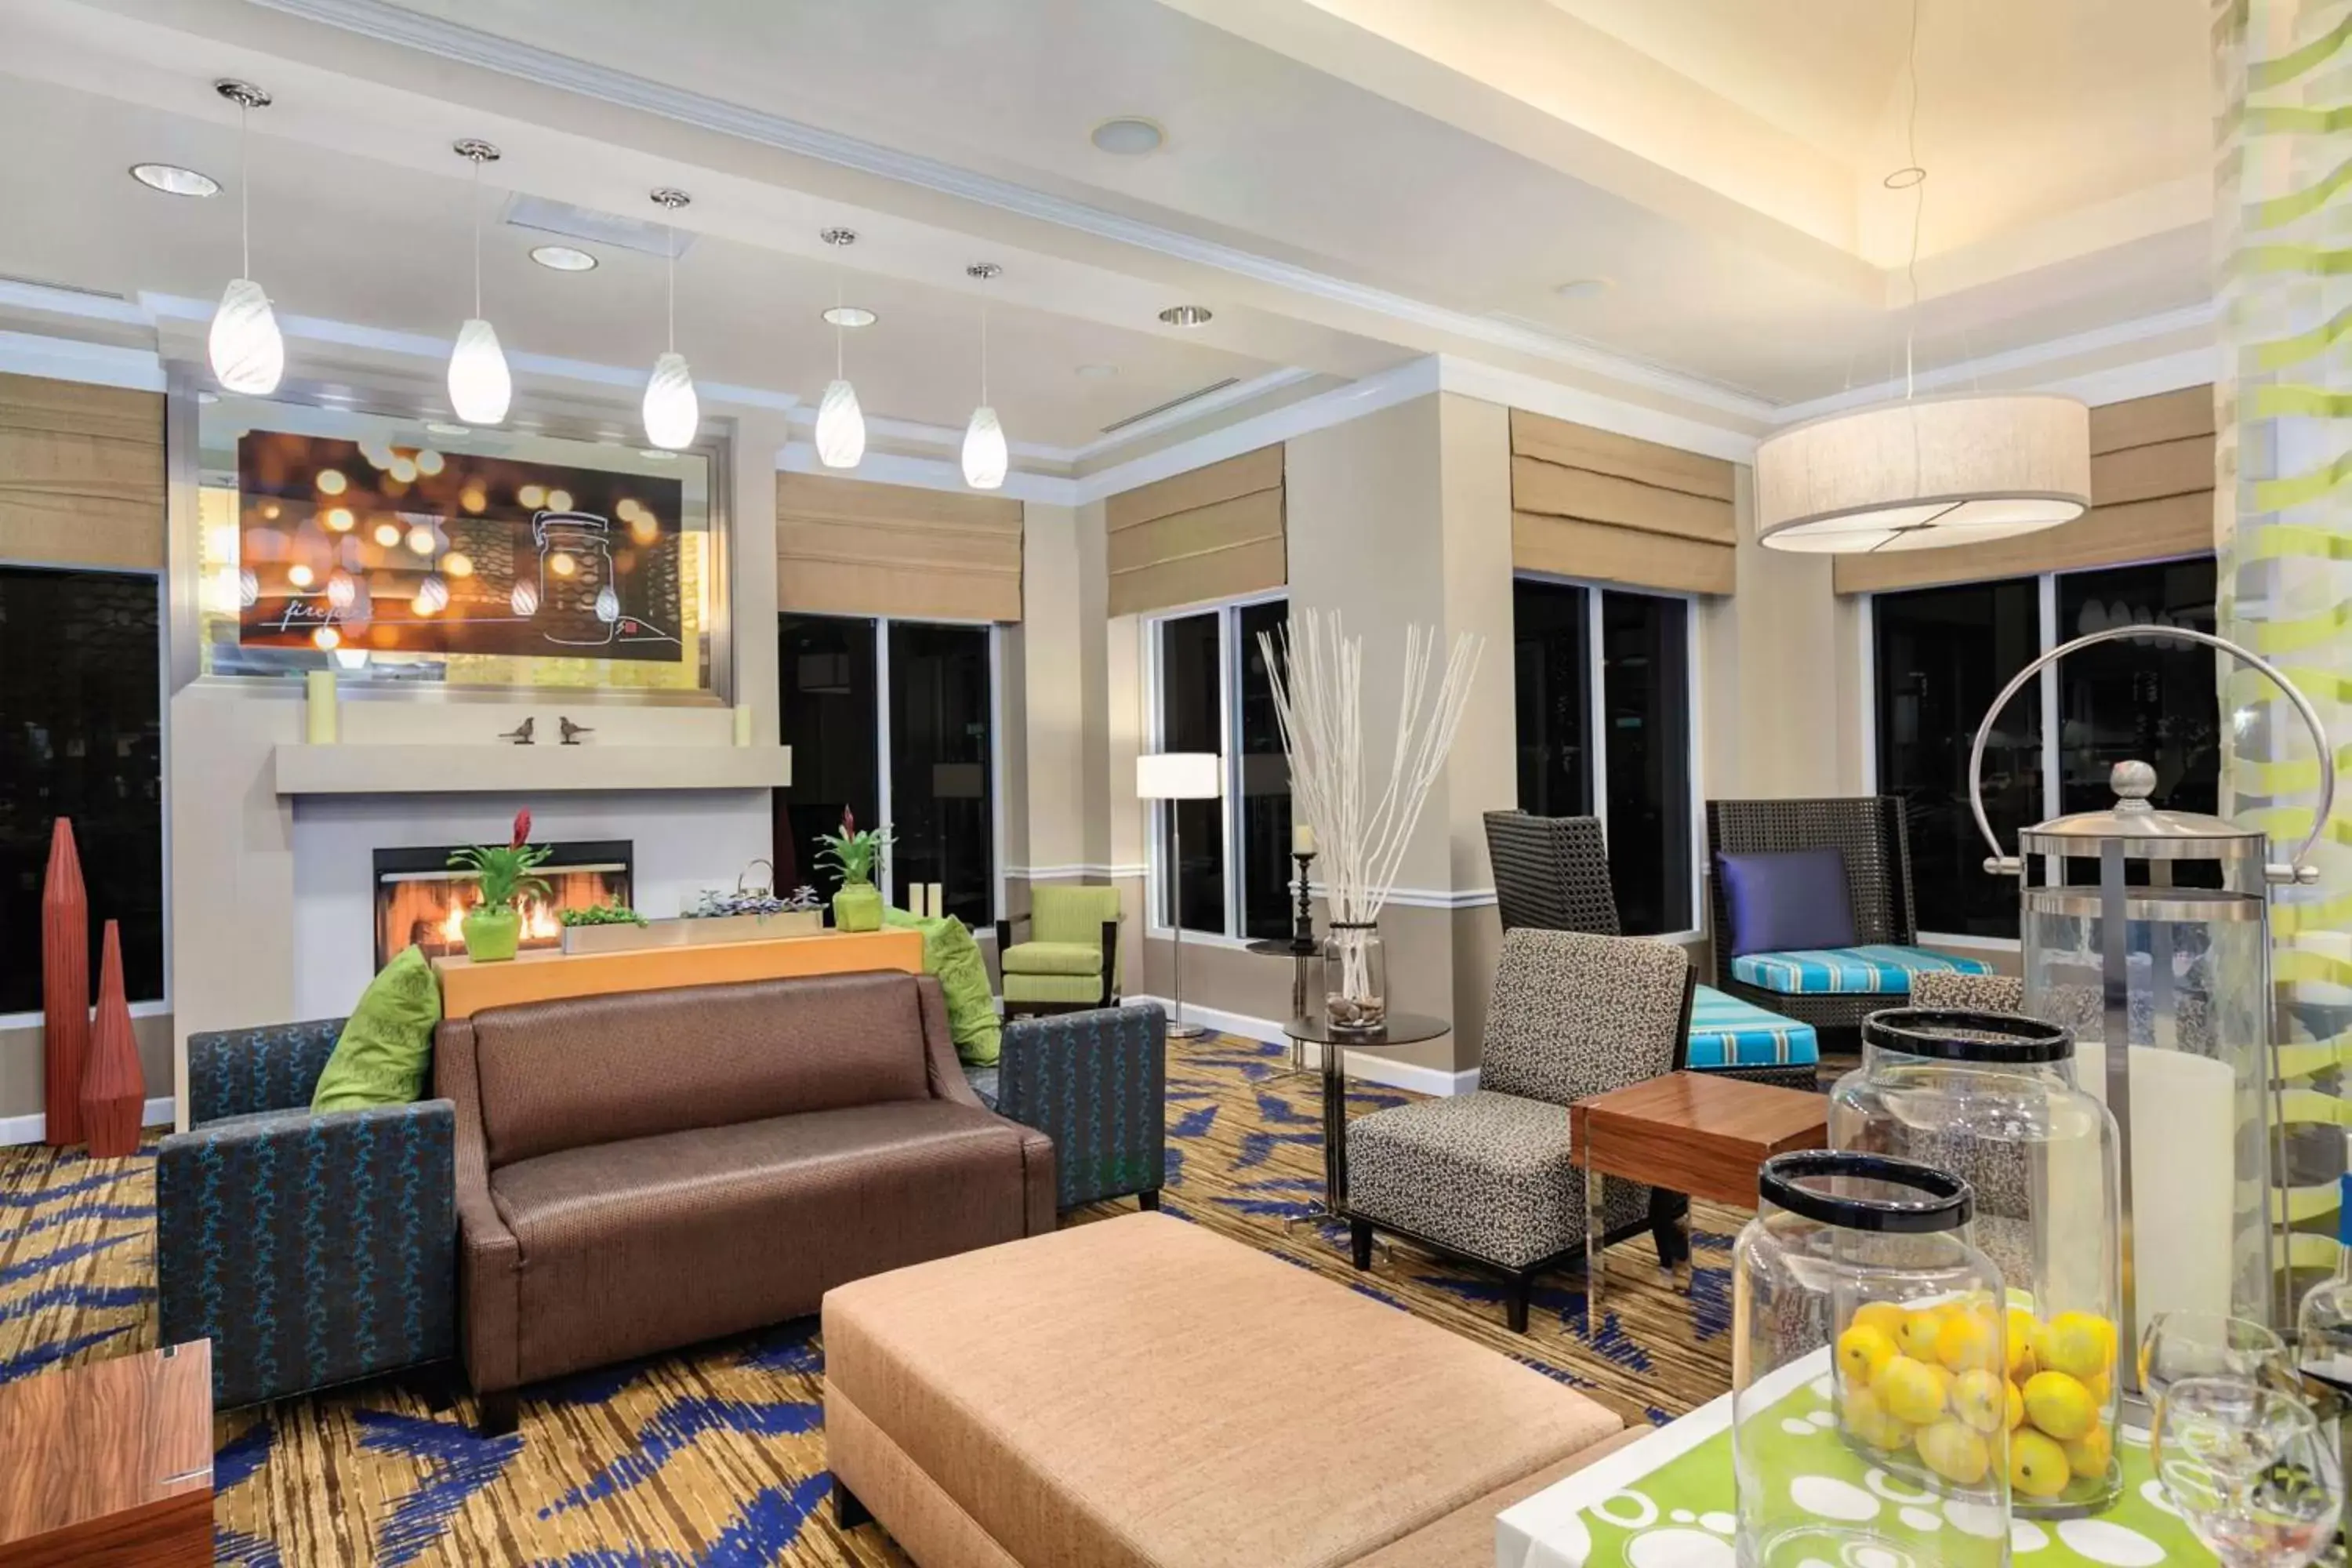 Lobby or reception, Lobby/Reception in Hilton Garden Inn Anaheim/Garden Grove